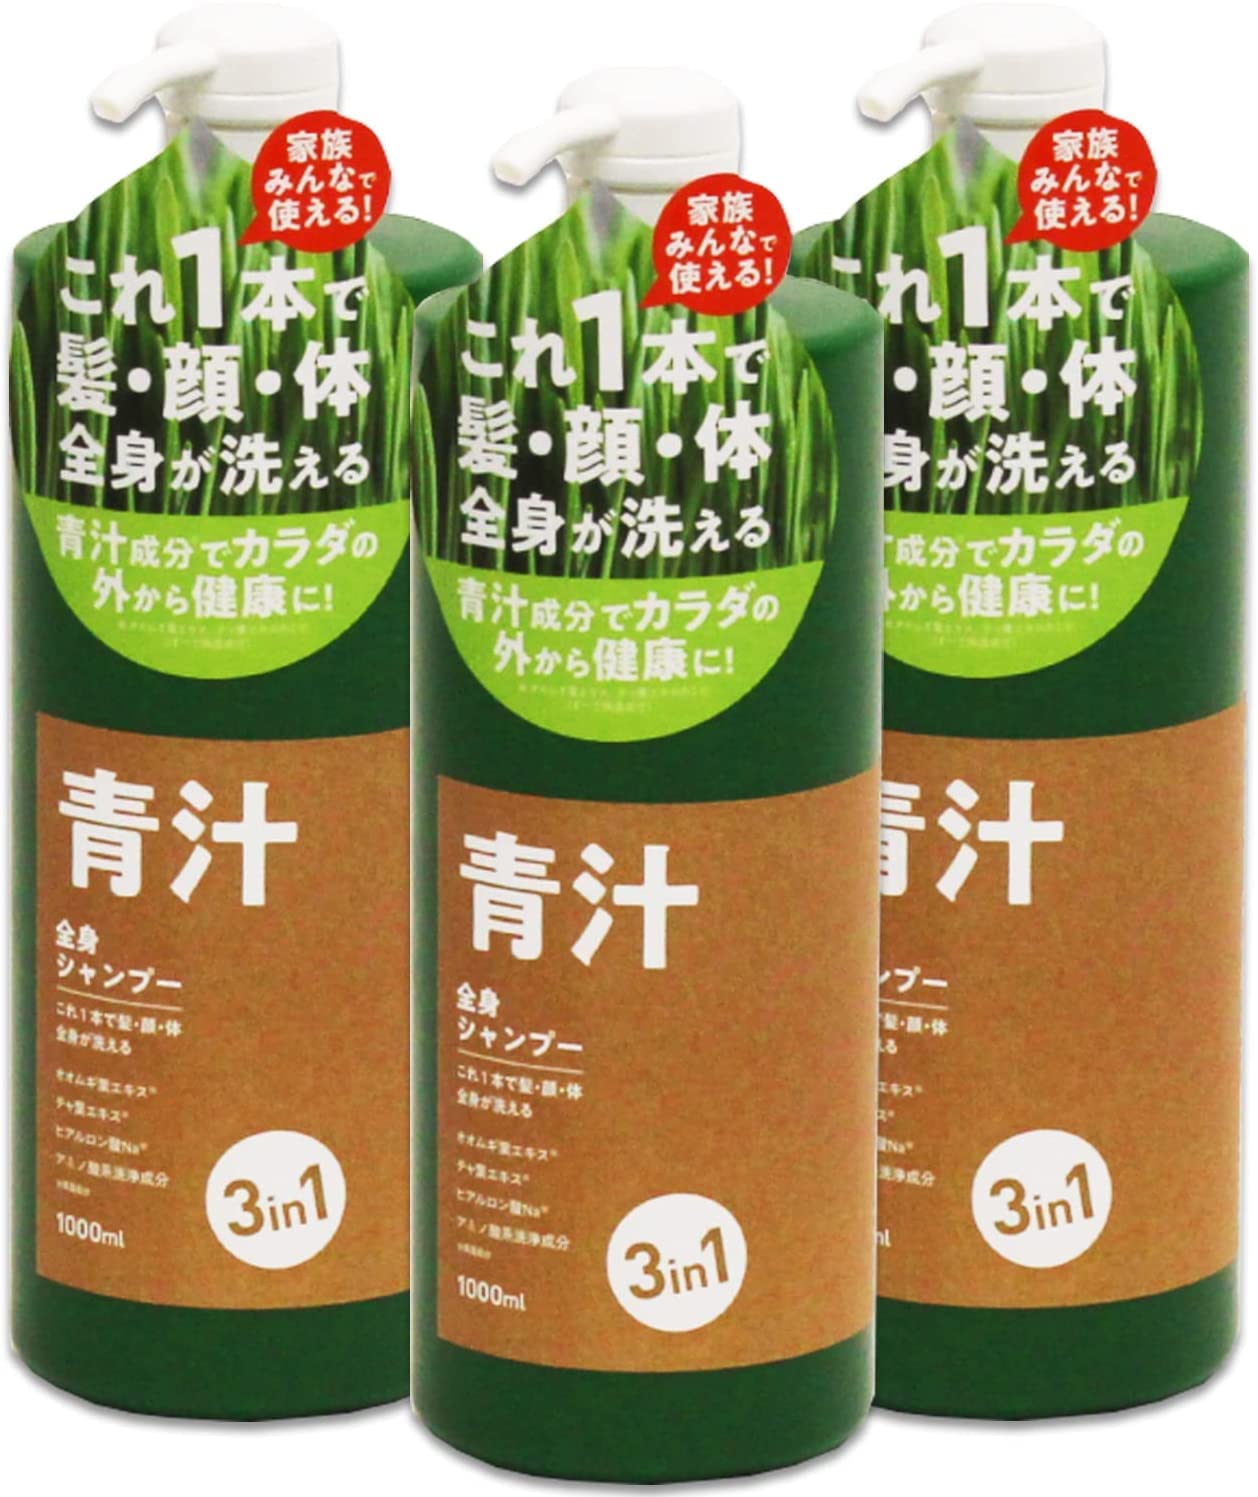 東京Deco 青汁全身シャンプー 3L 大容量1000ml×3本セット 国産 [3本] 3in1シャンプー [青汁成分の全身シャンプー] ソープ シャンプー ボ